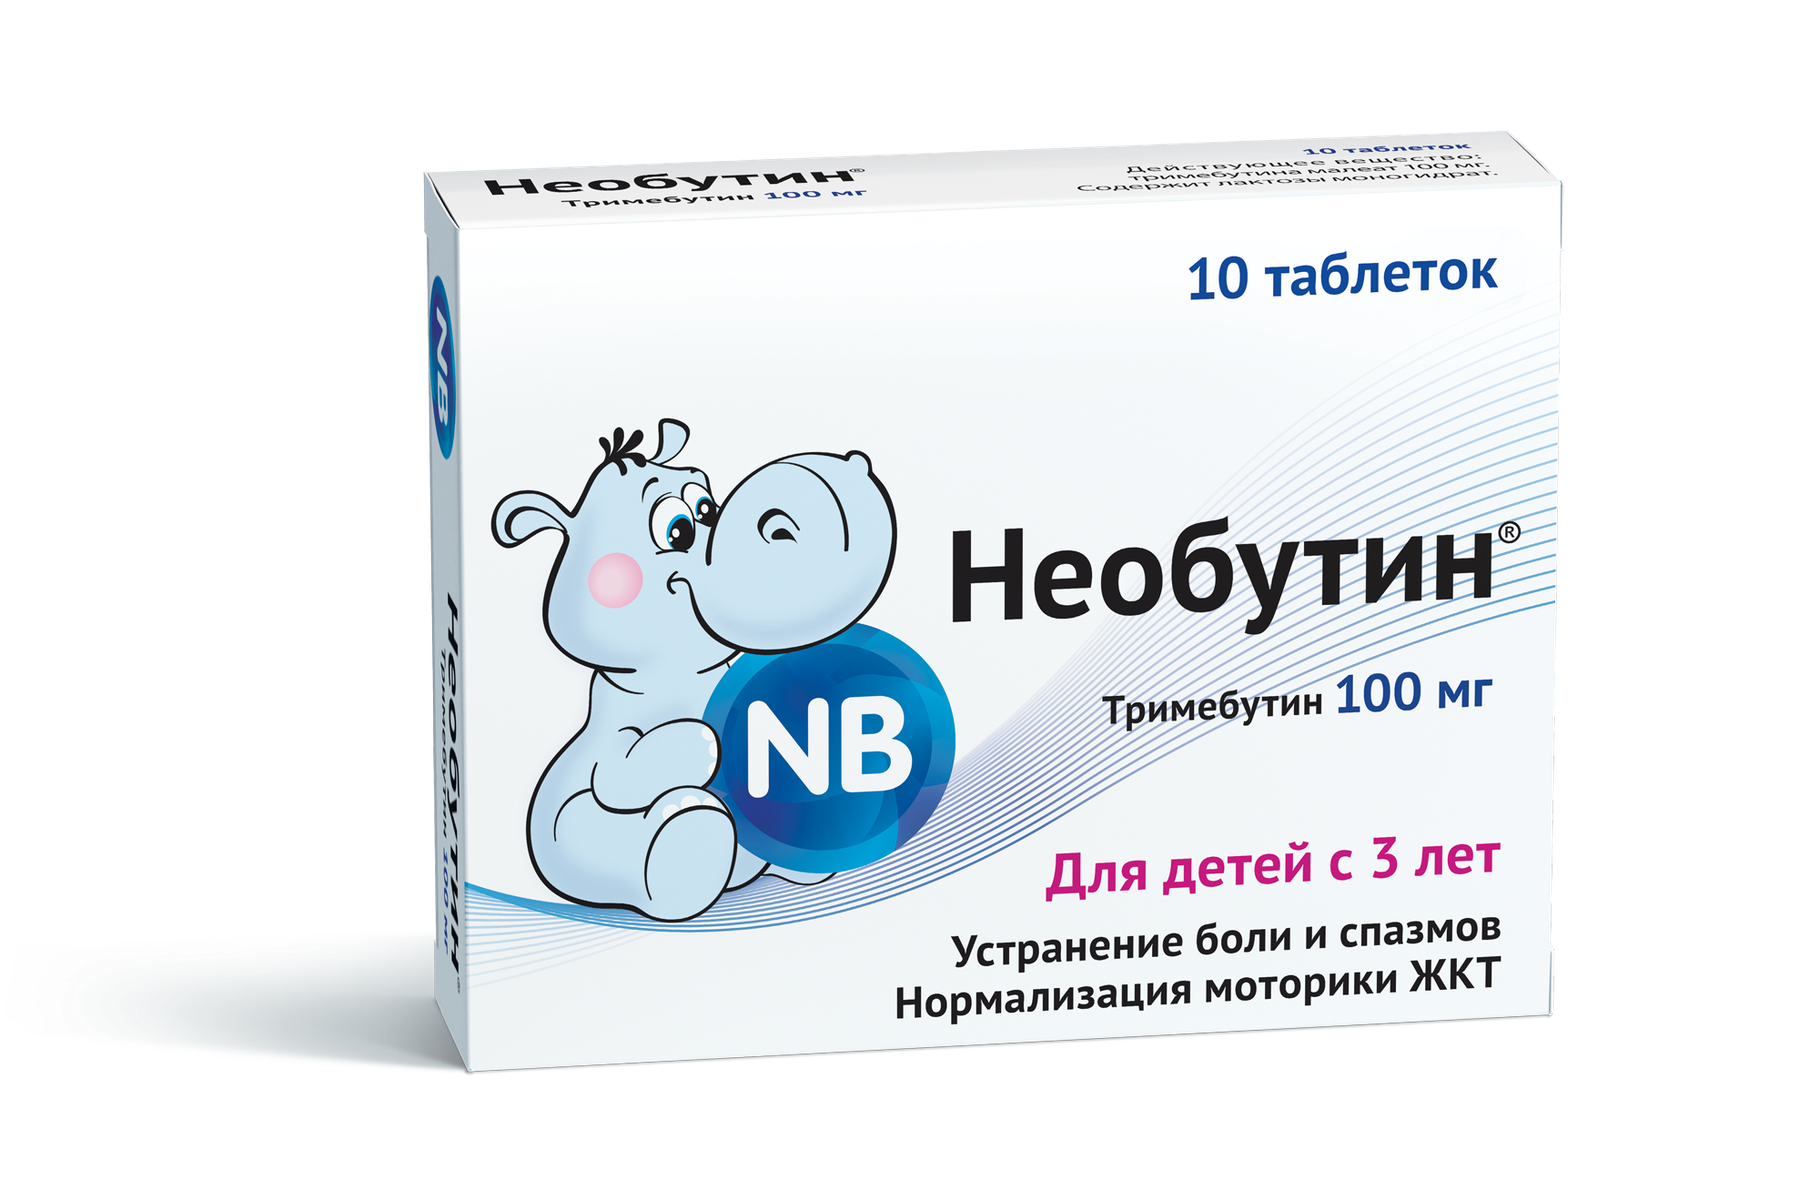 Необутин (таблетки, 10 шт, 100 мг) - цена,  онлайн  .